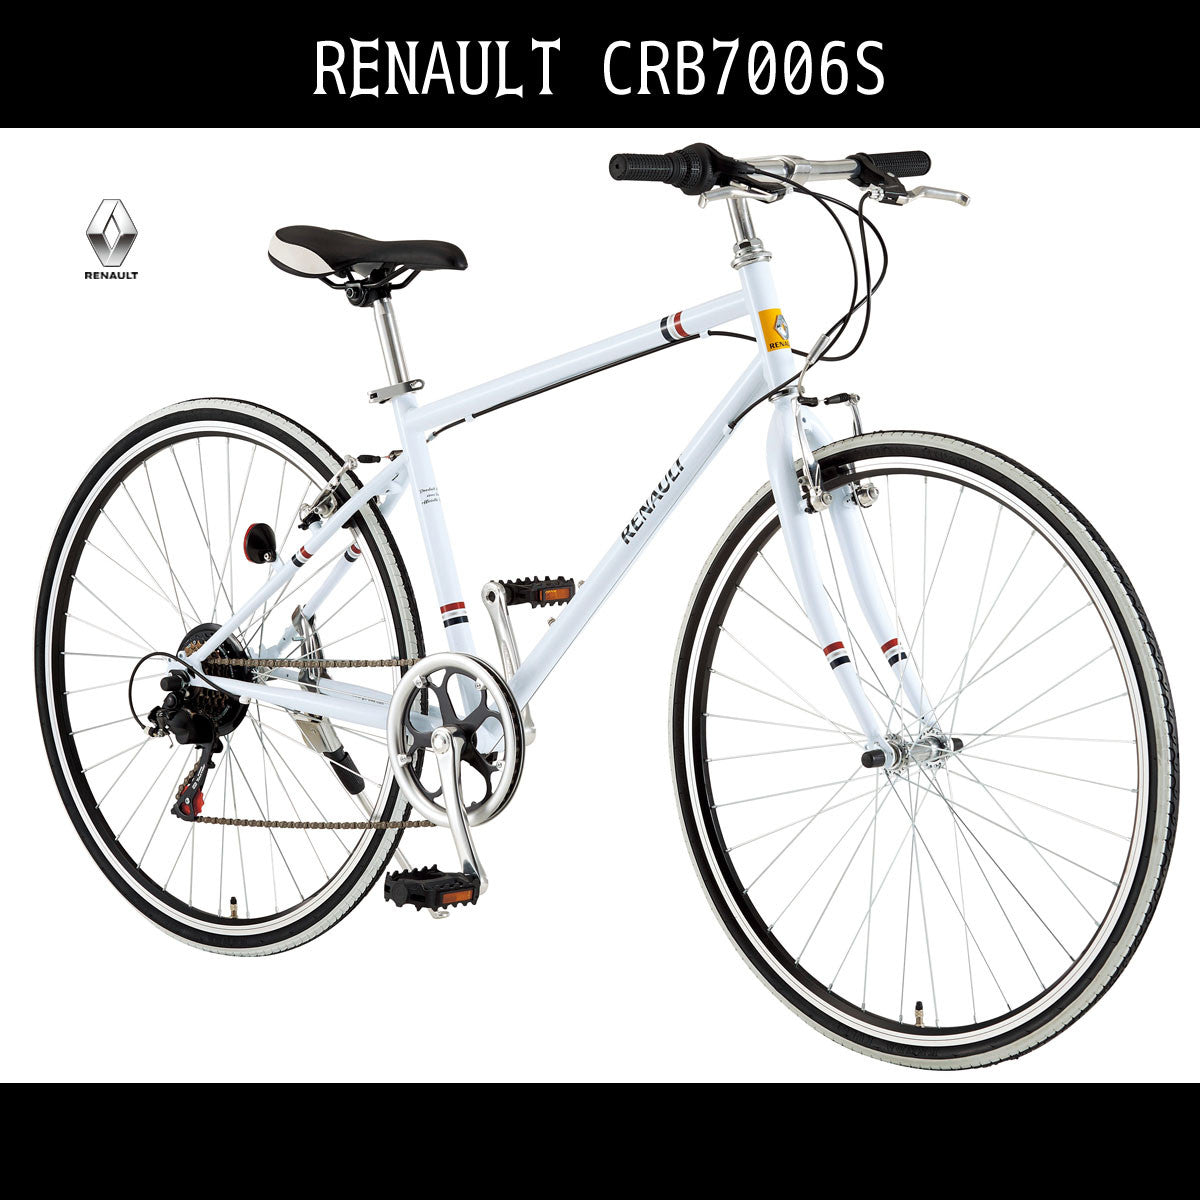 6段変速ギア 700c ホワイト白 クロスバイク ルノー Renault Crb7006s 自転車 自転車 通販のゴーゴーサイクリング